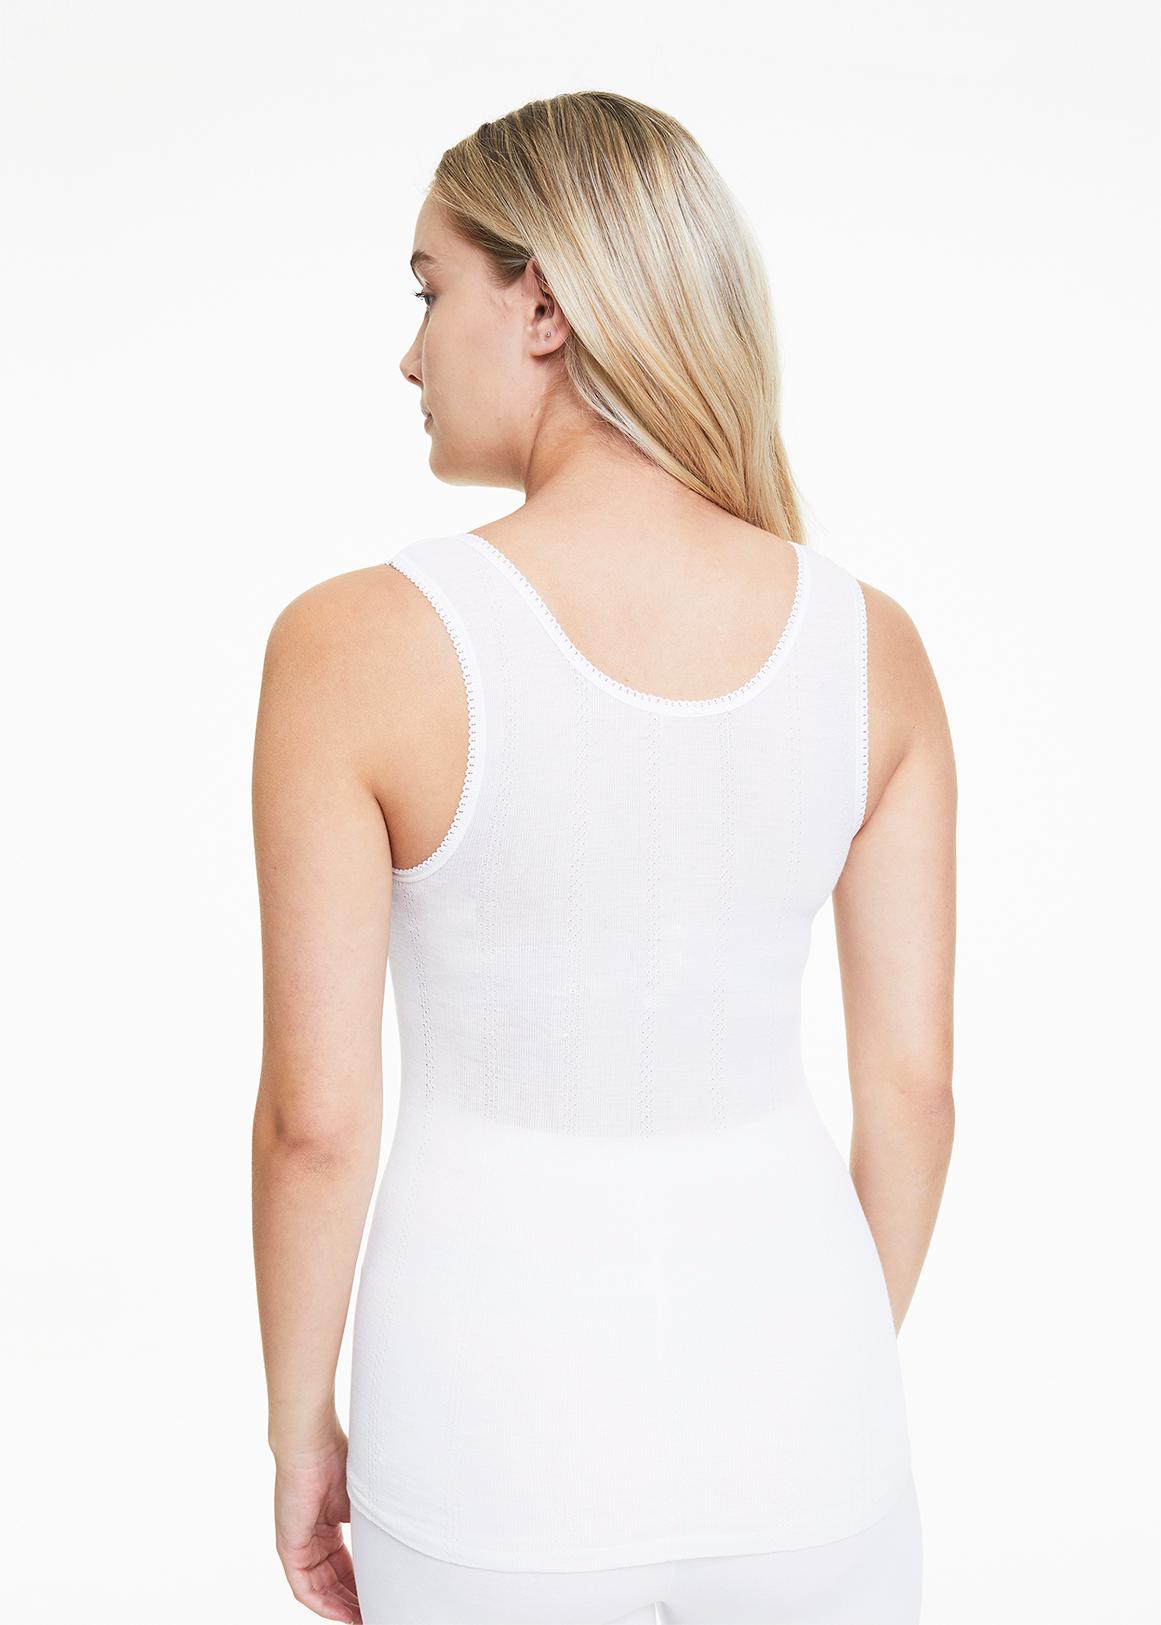 vegetabk Sleeveless Thermal vest for Women with Built in Bra V